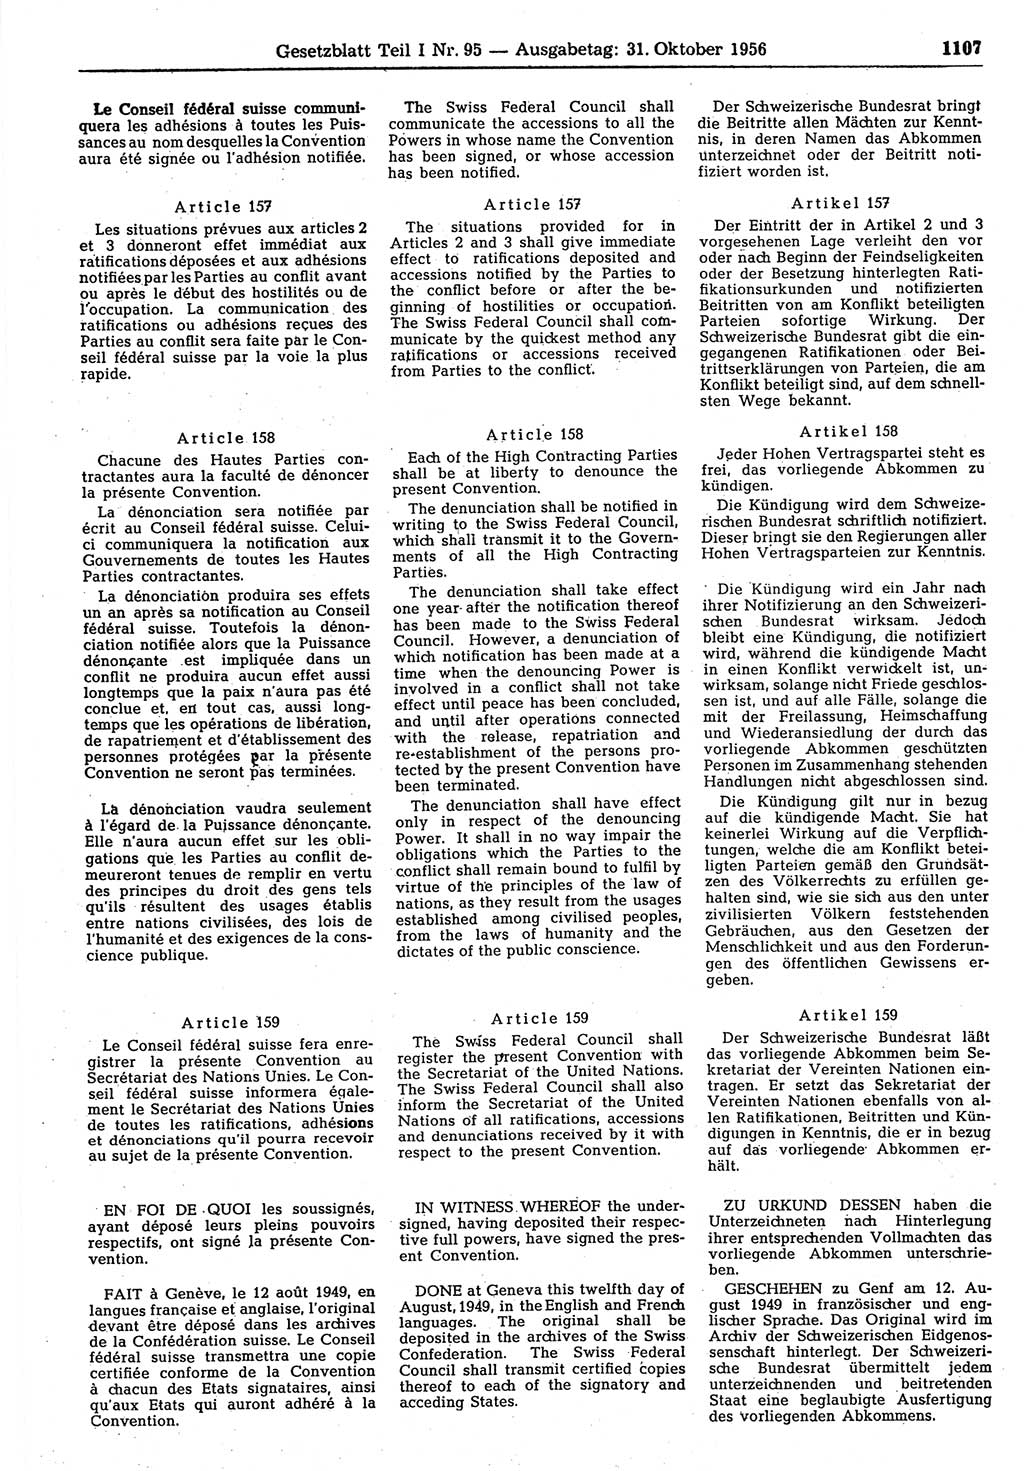 Gesetzblatt (GBl.) der Deutschen Demokratischen Republik (DDR) Teil Ⅰ 1956, Seite 1107 (GBl. DDR Ⅰ 1956, S. 1107)